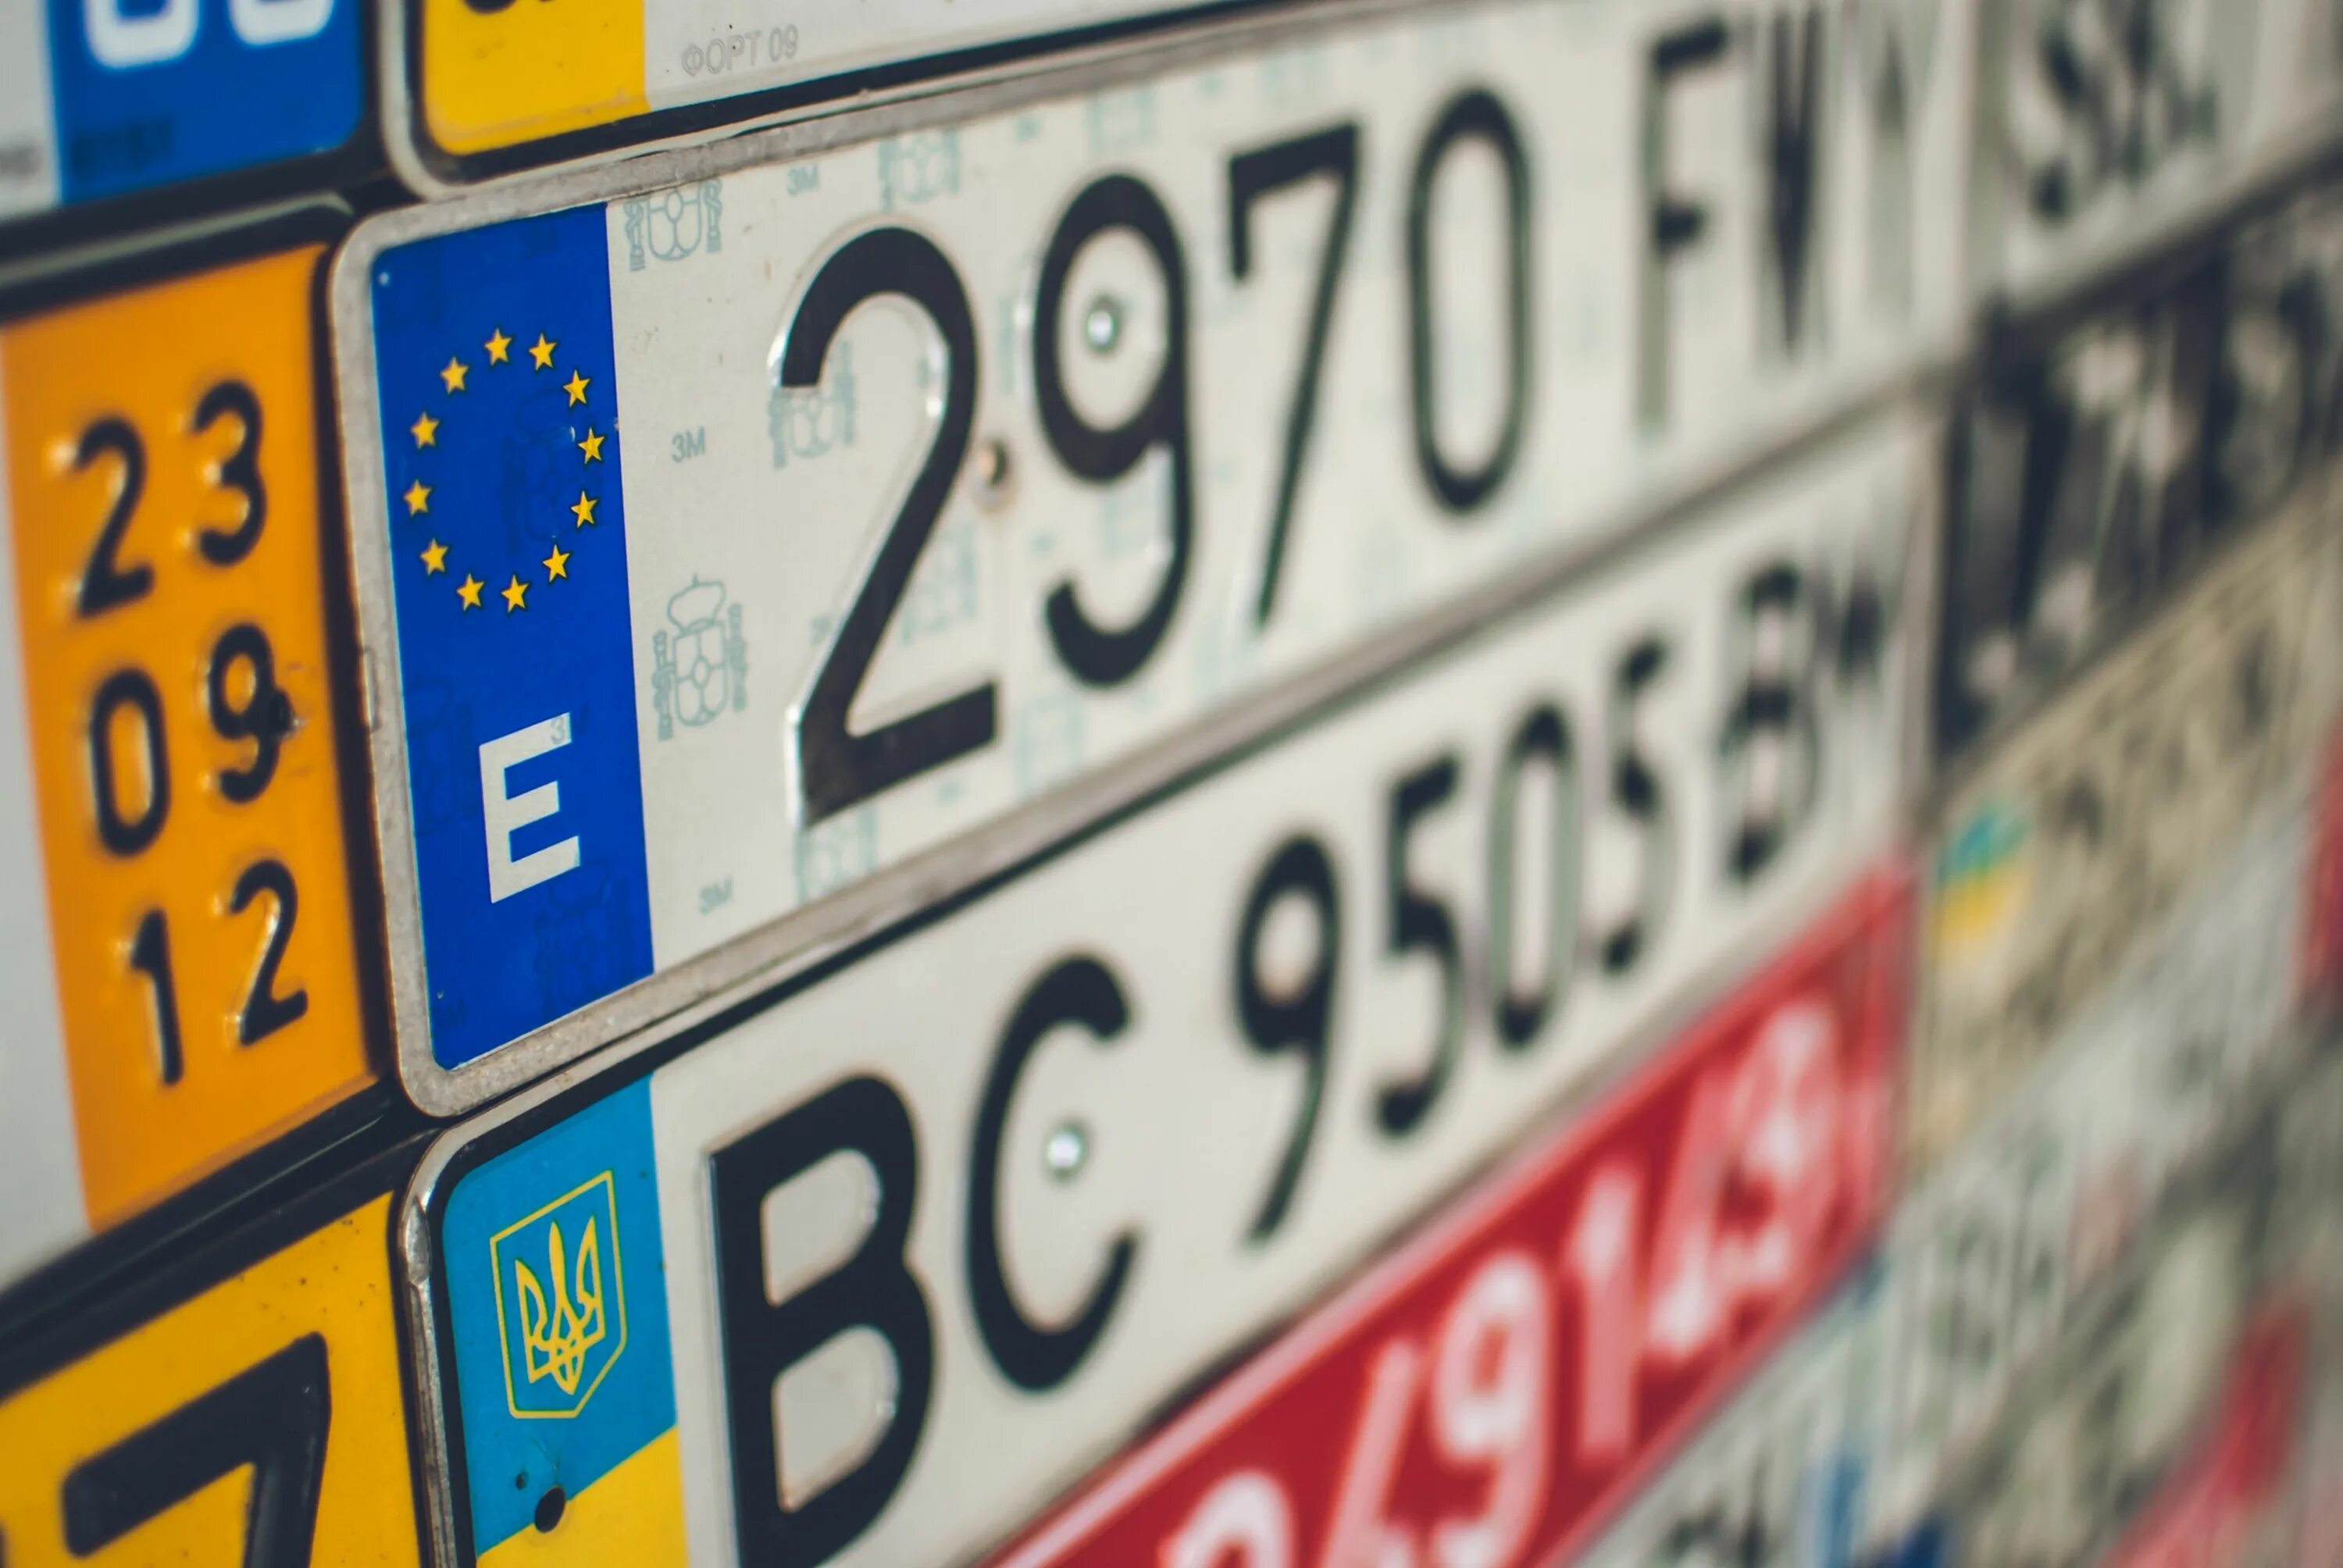 Цифры на украинском. European License Plates. Запрещенные цифры. European License Plate Design.